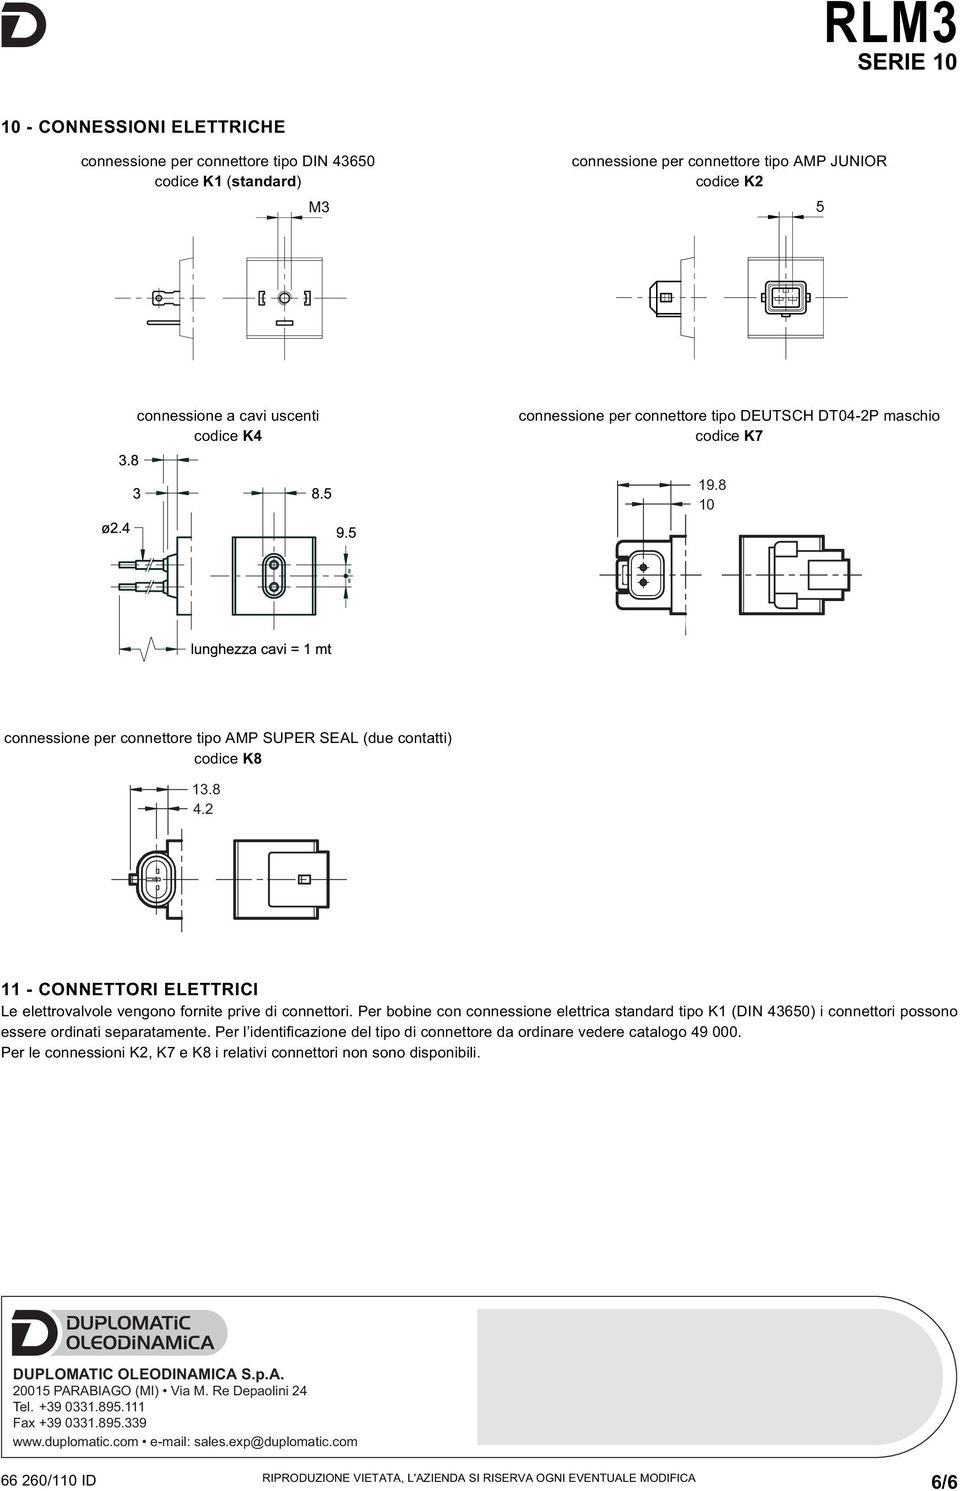 2 11 - CONNEORI ELERICI Le elettrovalvole vengono fornite prive di connettori. er bobine con connessione elettrica standard tipo K1 (DIN 43650) i connettori possono essere ordinati separatamente.